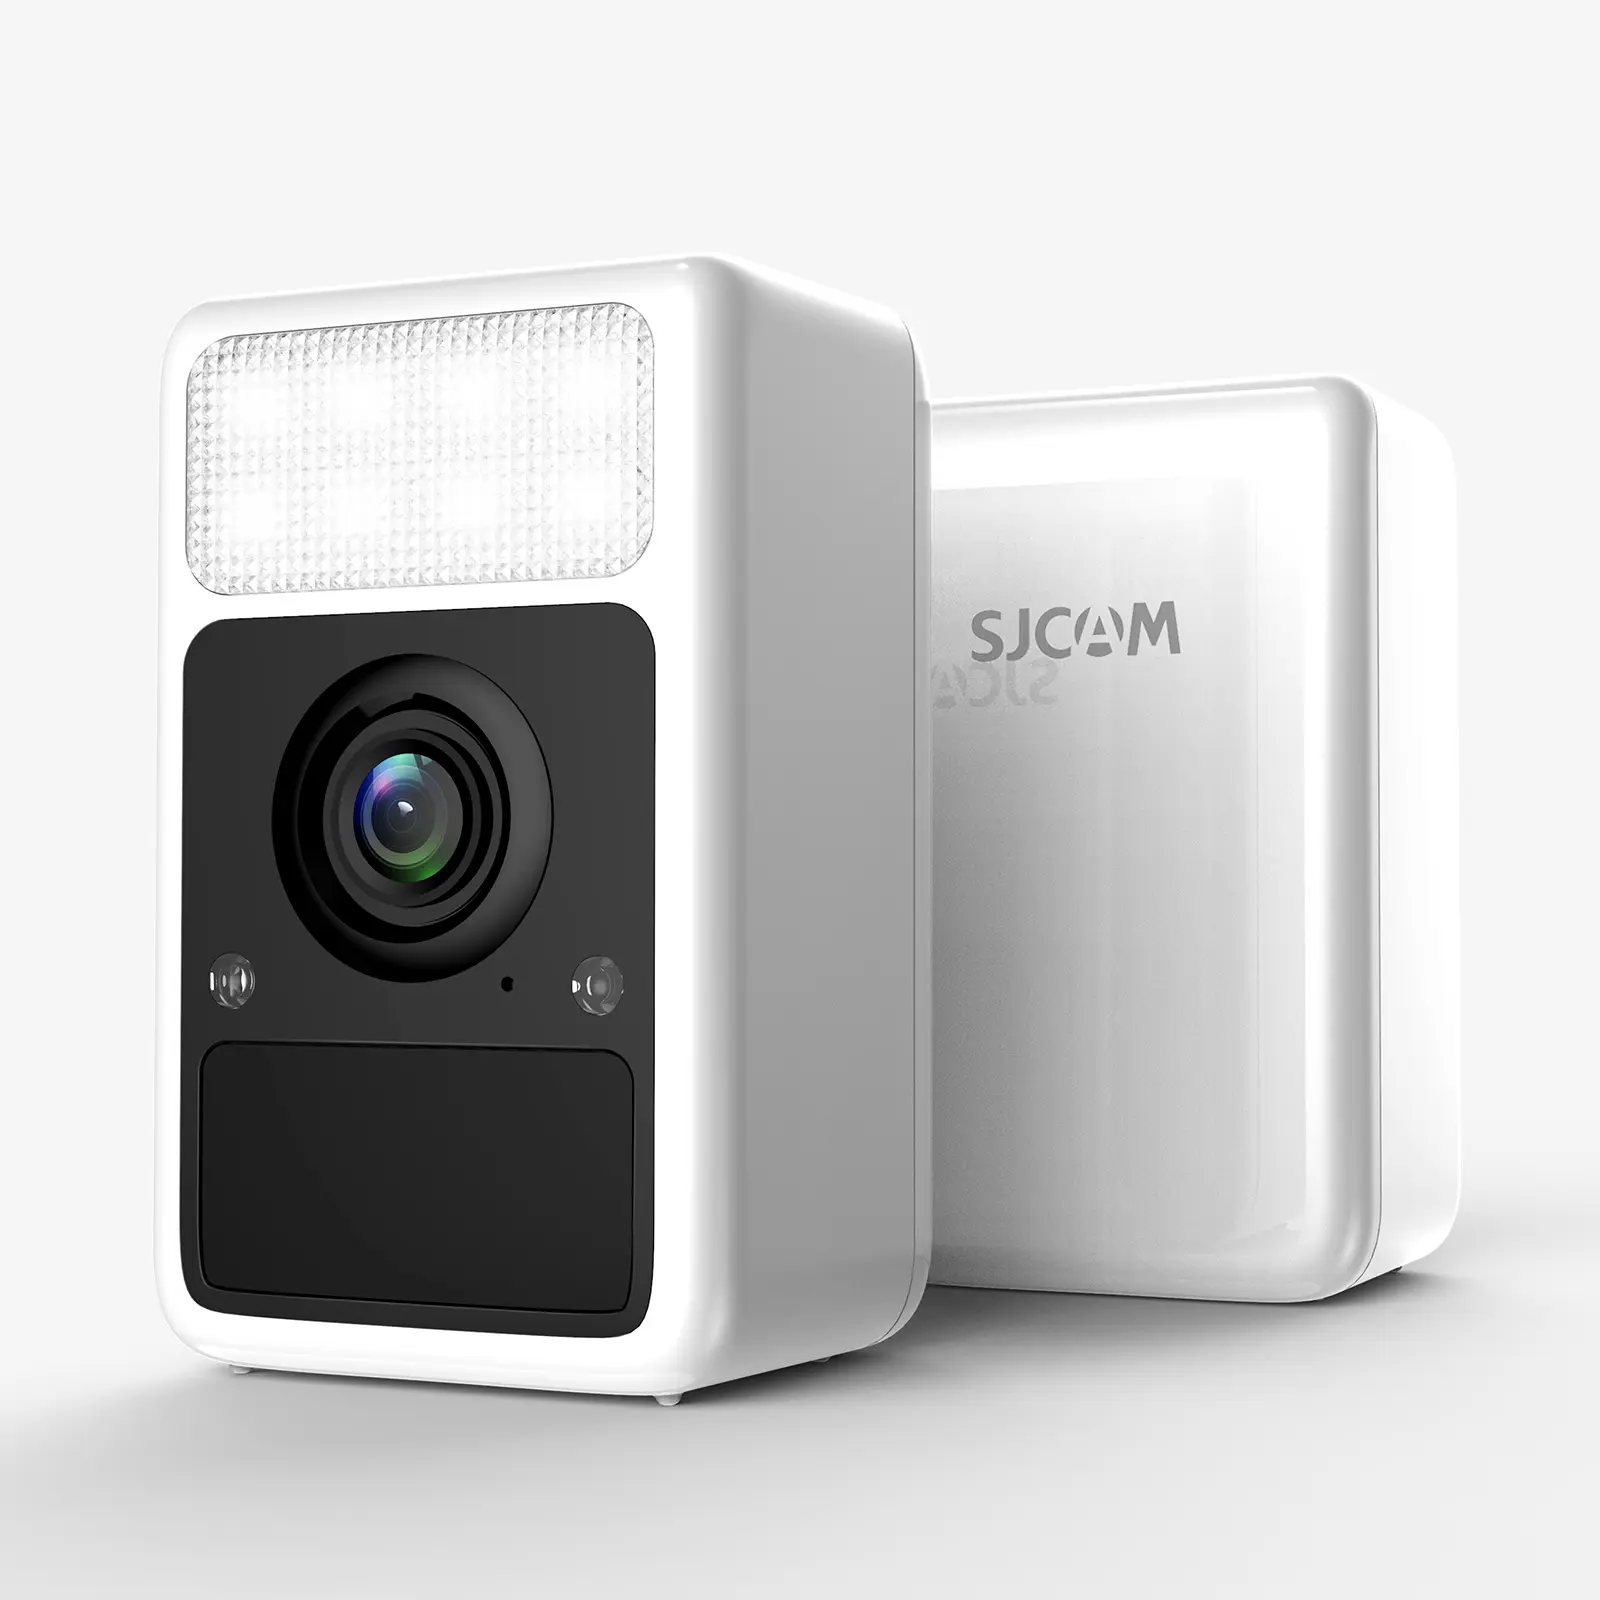 SJCAM S1 Home Camera 10m PIR telecamera di sicurezza con angolo dell'obiettivo di 95 gradi APP condividi 2K risoluzione Video visione notturna impermeabile